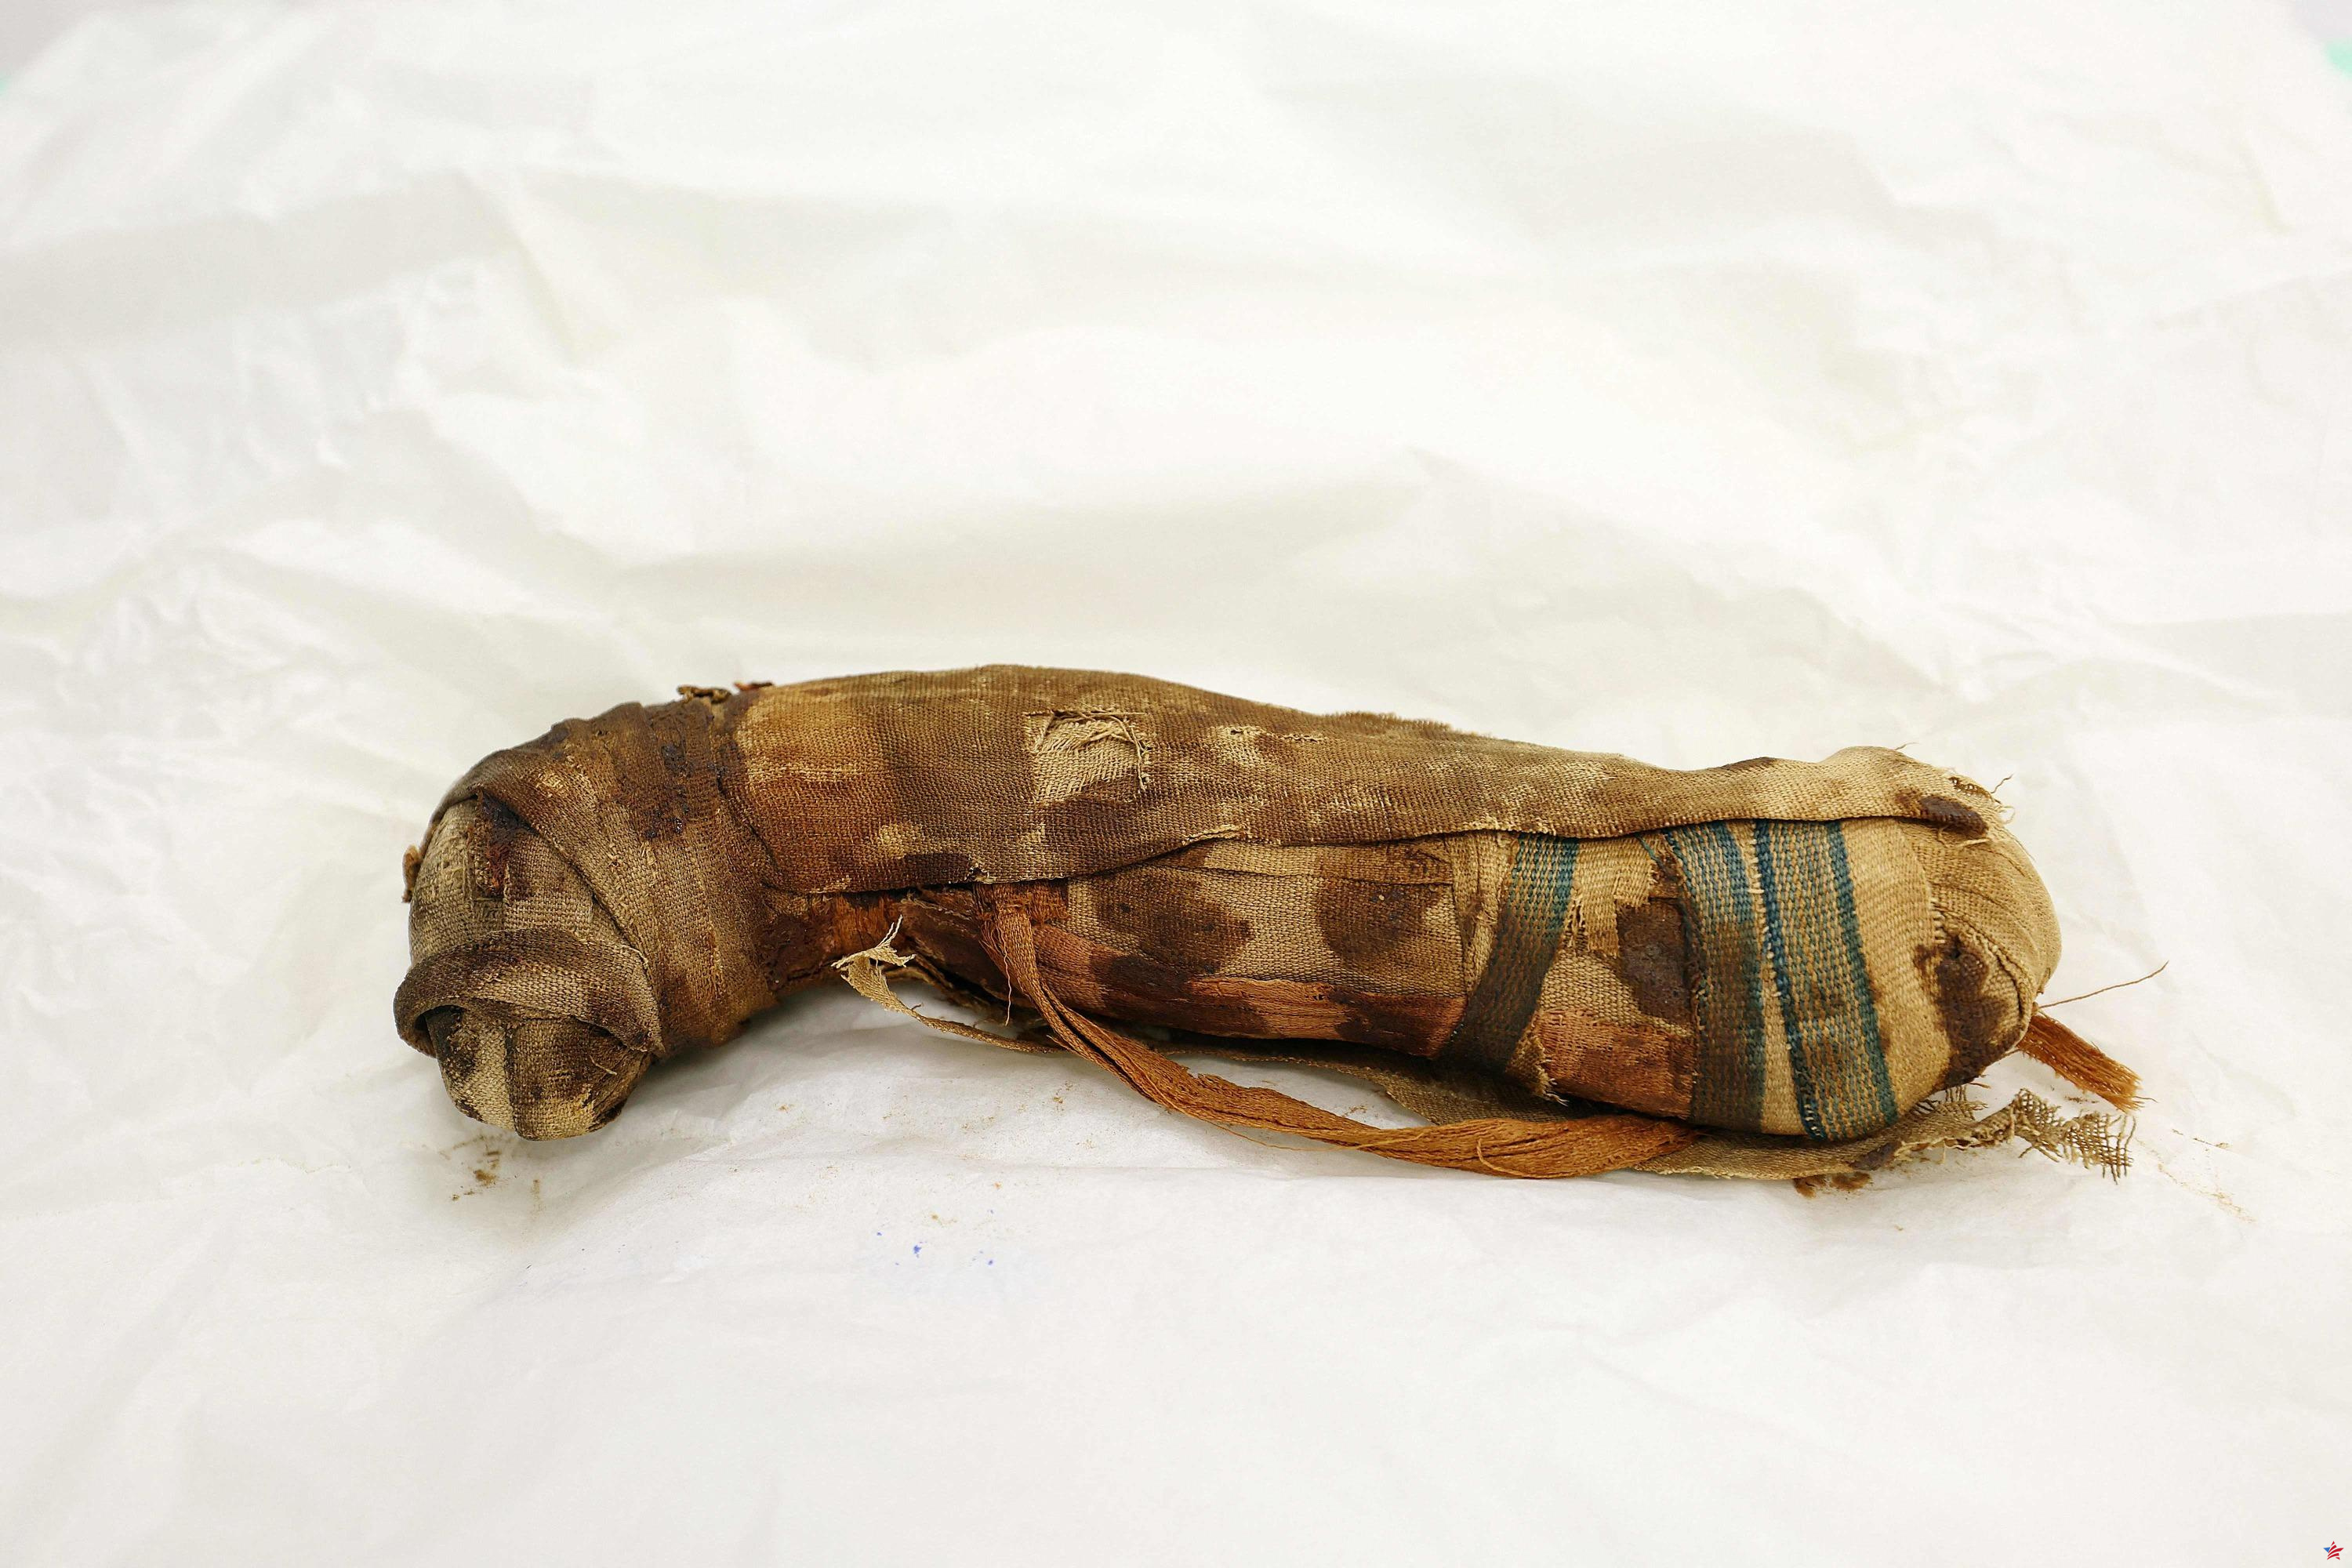 En Alsacia, cinco momias egipcias de animales de entre 2.000 y 3.000 años de antigüedad revelan sus secretos bajo un escáner